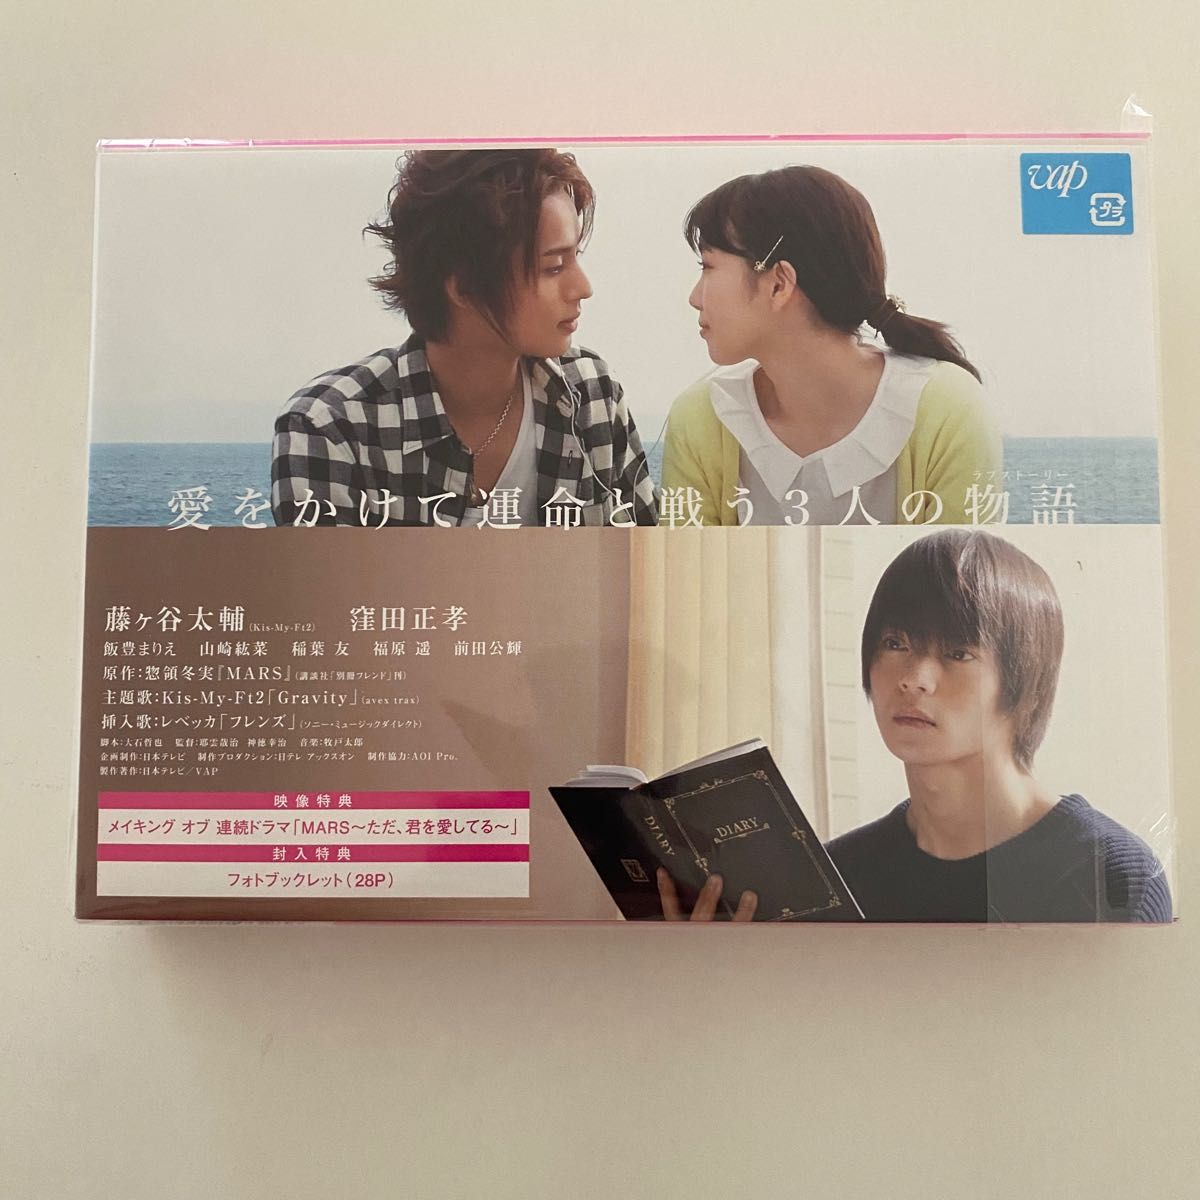 連続ドラマ MARS 〜ただ 君を愛してる〜 DVD-BOX セル版 国内正規品